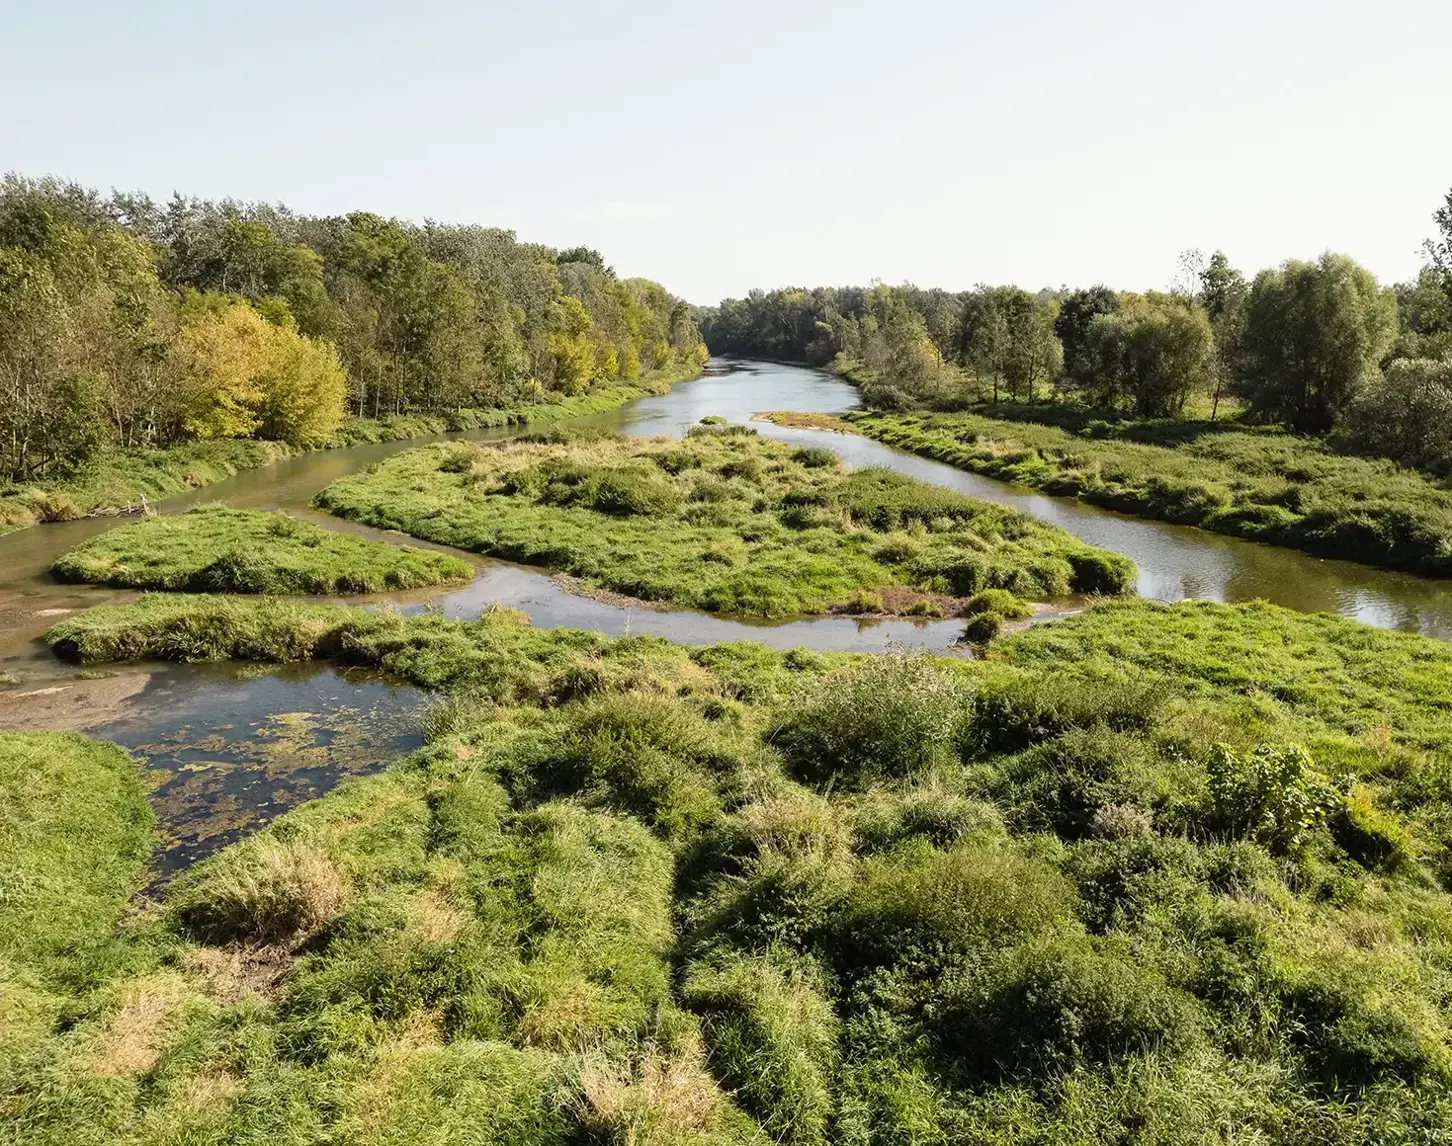 Projekt LIFE+ Traisen: Die Flusslandschaft mit Wiesen und Sträuchern wird sich nun ungestört auf natürliche Weise weiterentwickeln.